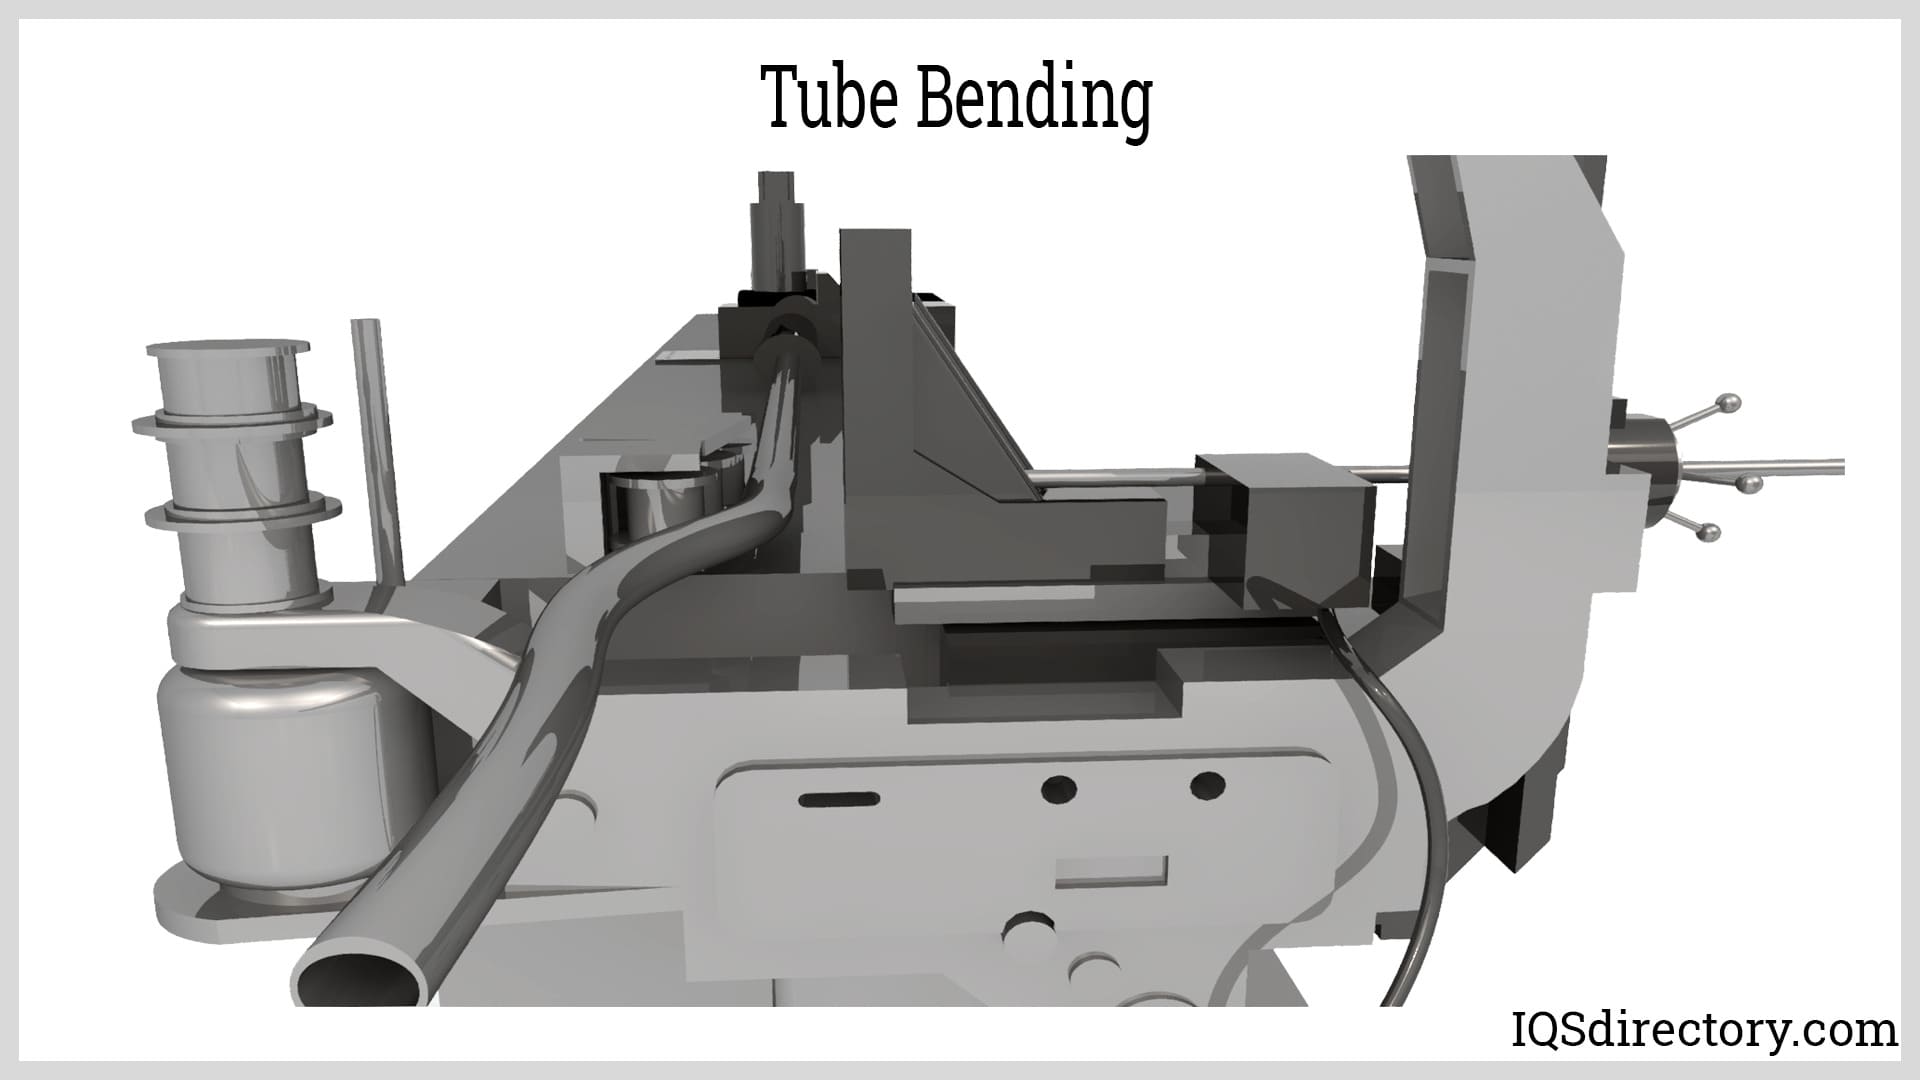 Tube Bending